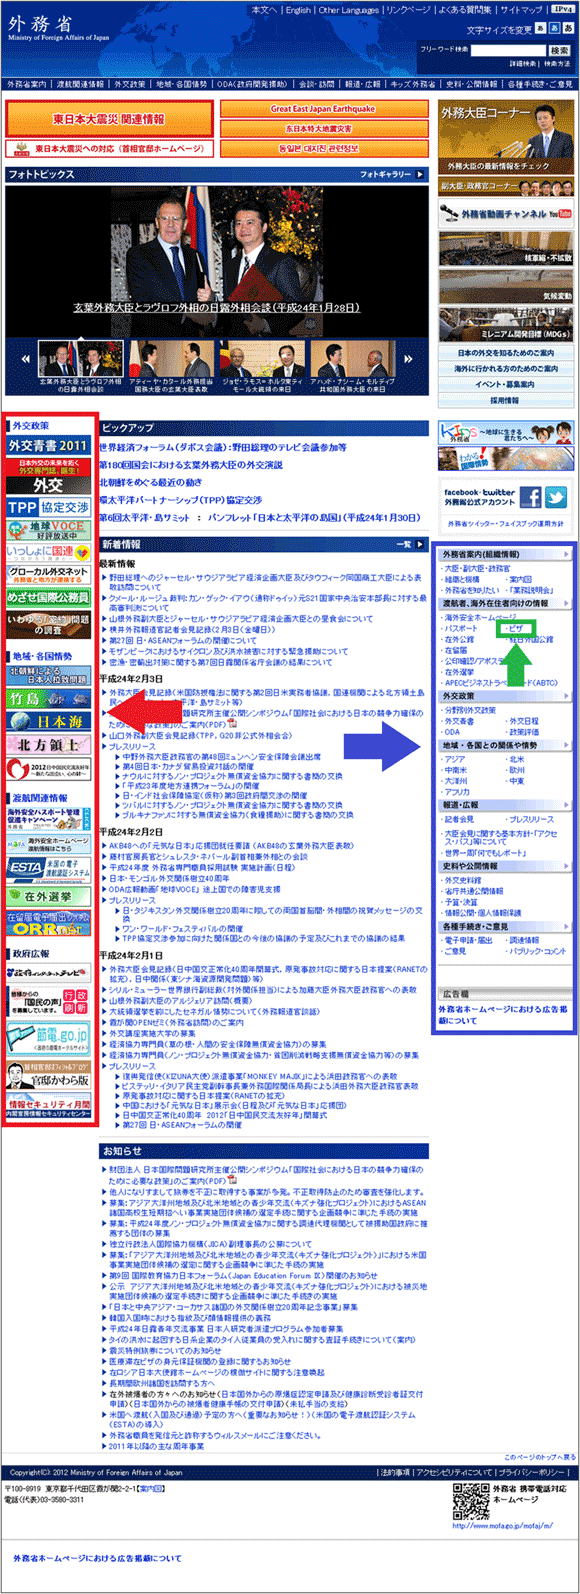 図3（再掲）：「外務省」（日本語版）トップページ